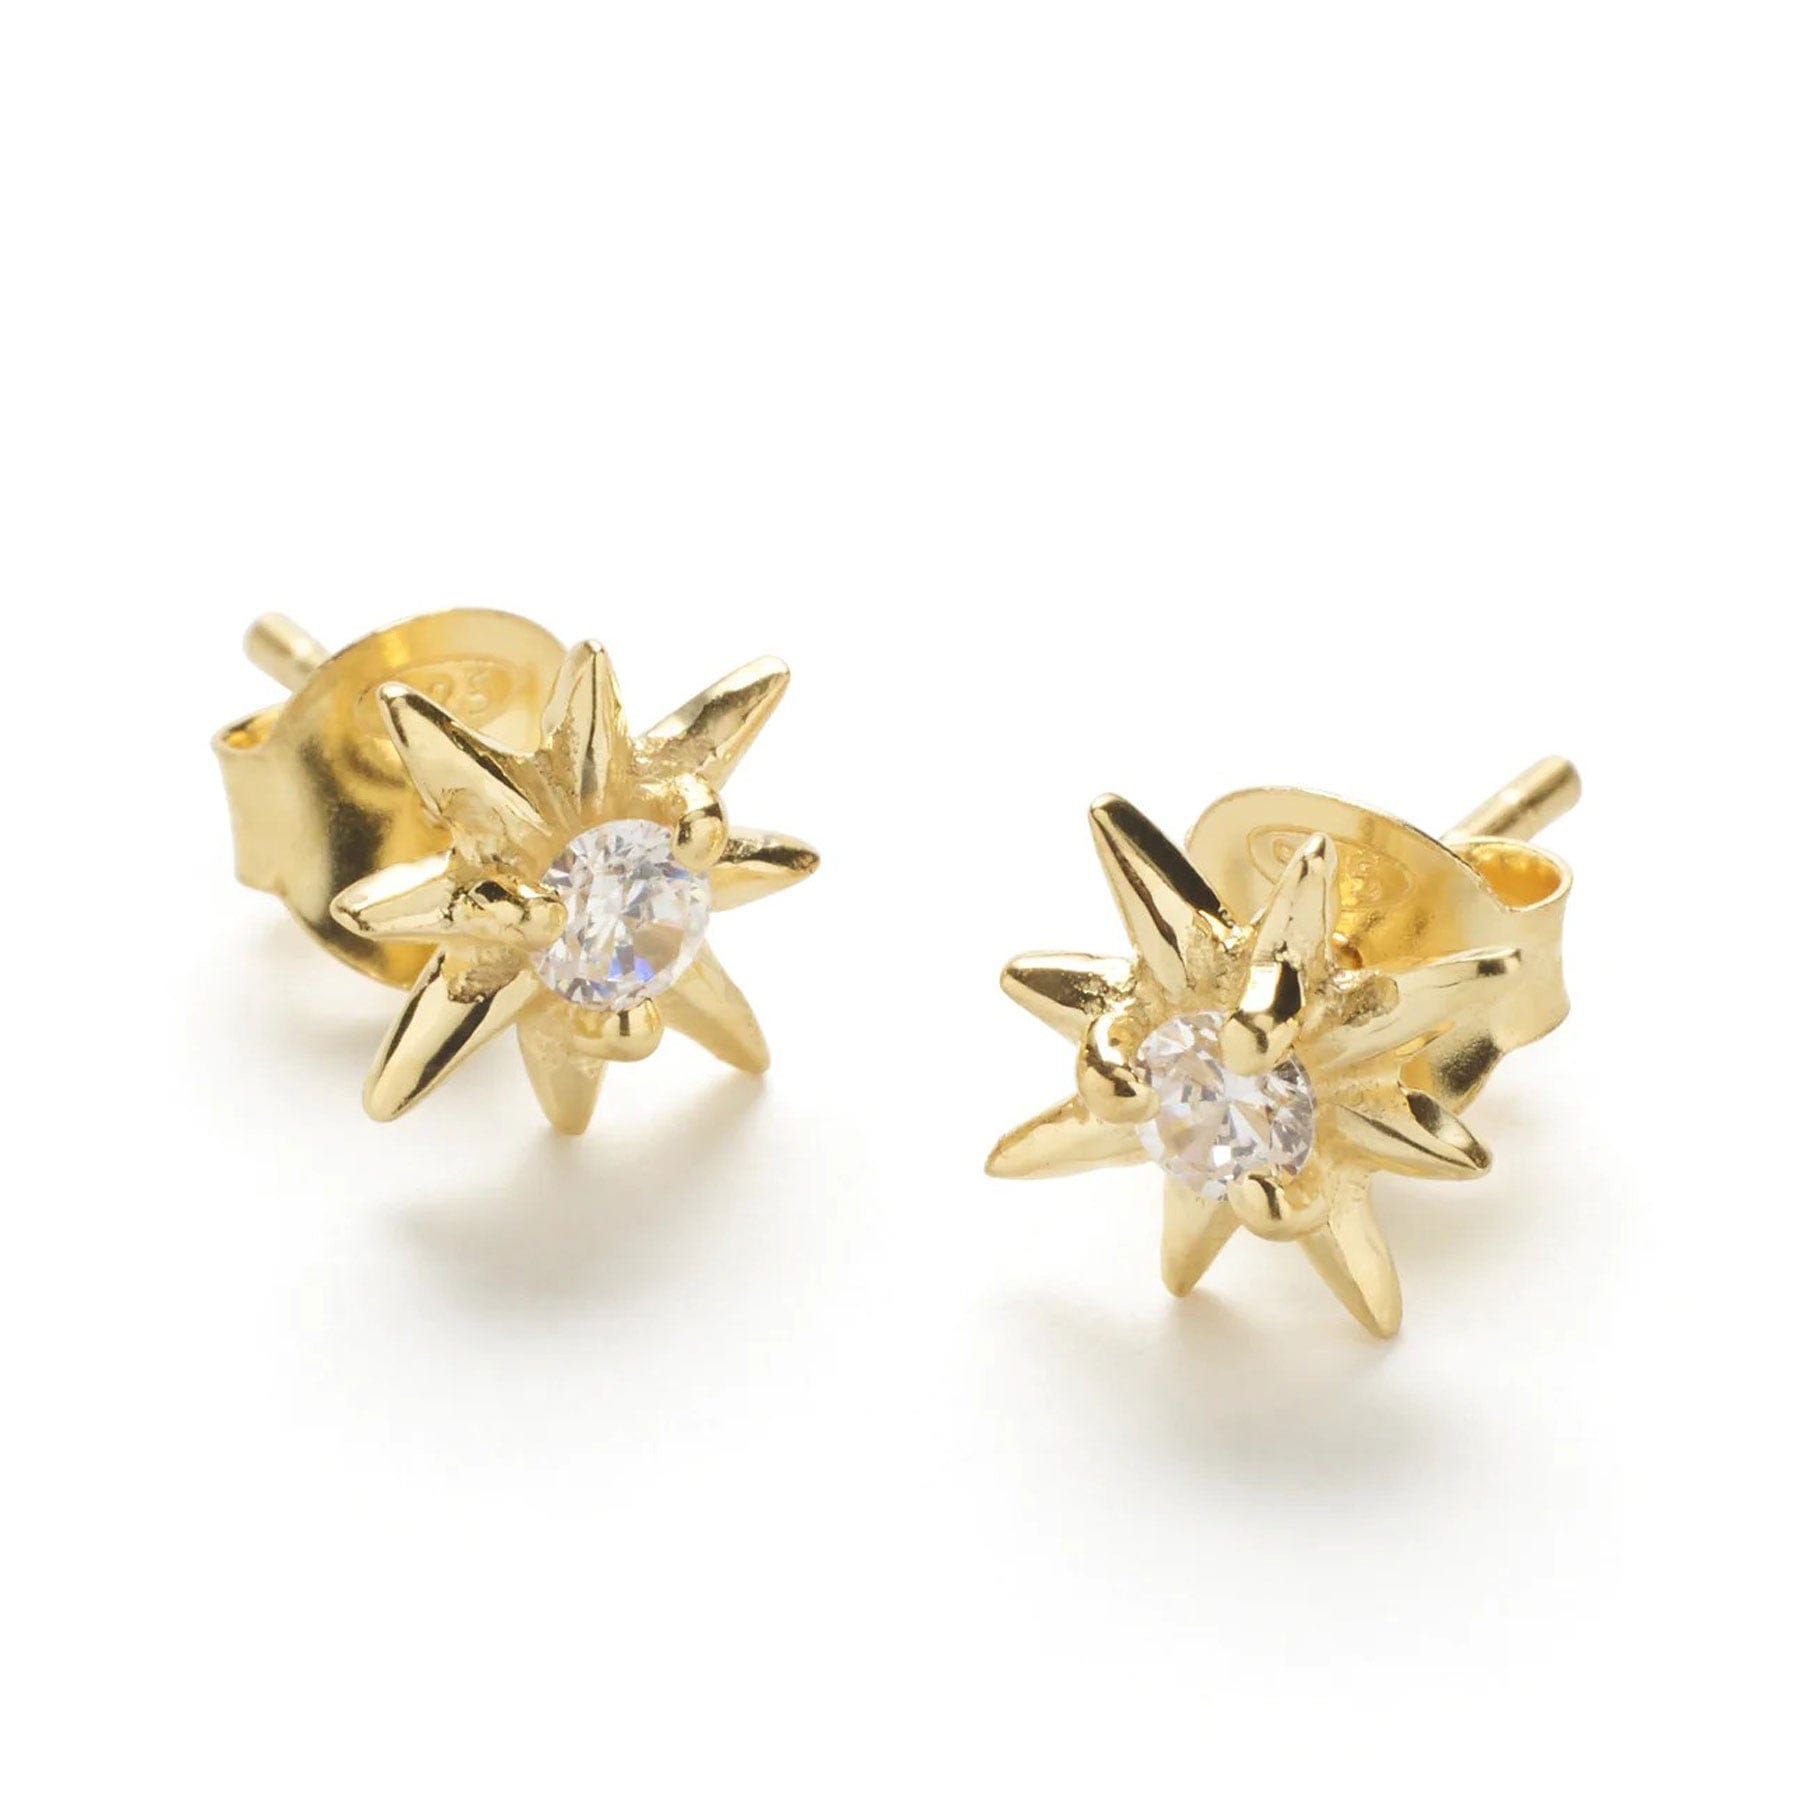 Star earrings gold